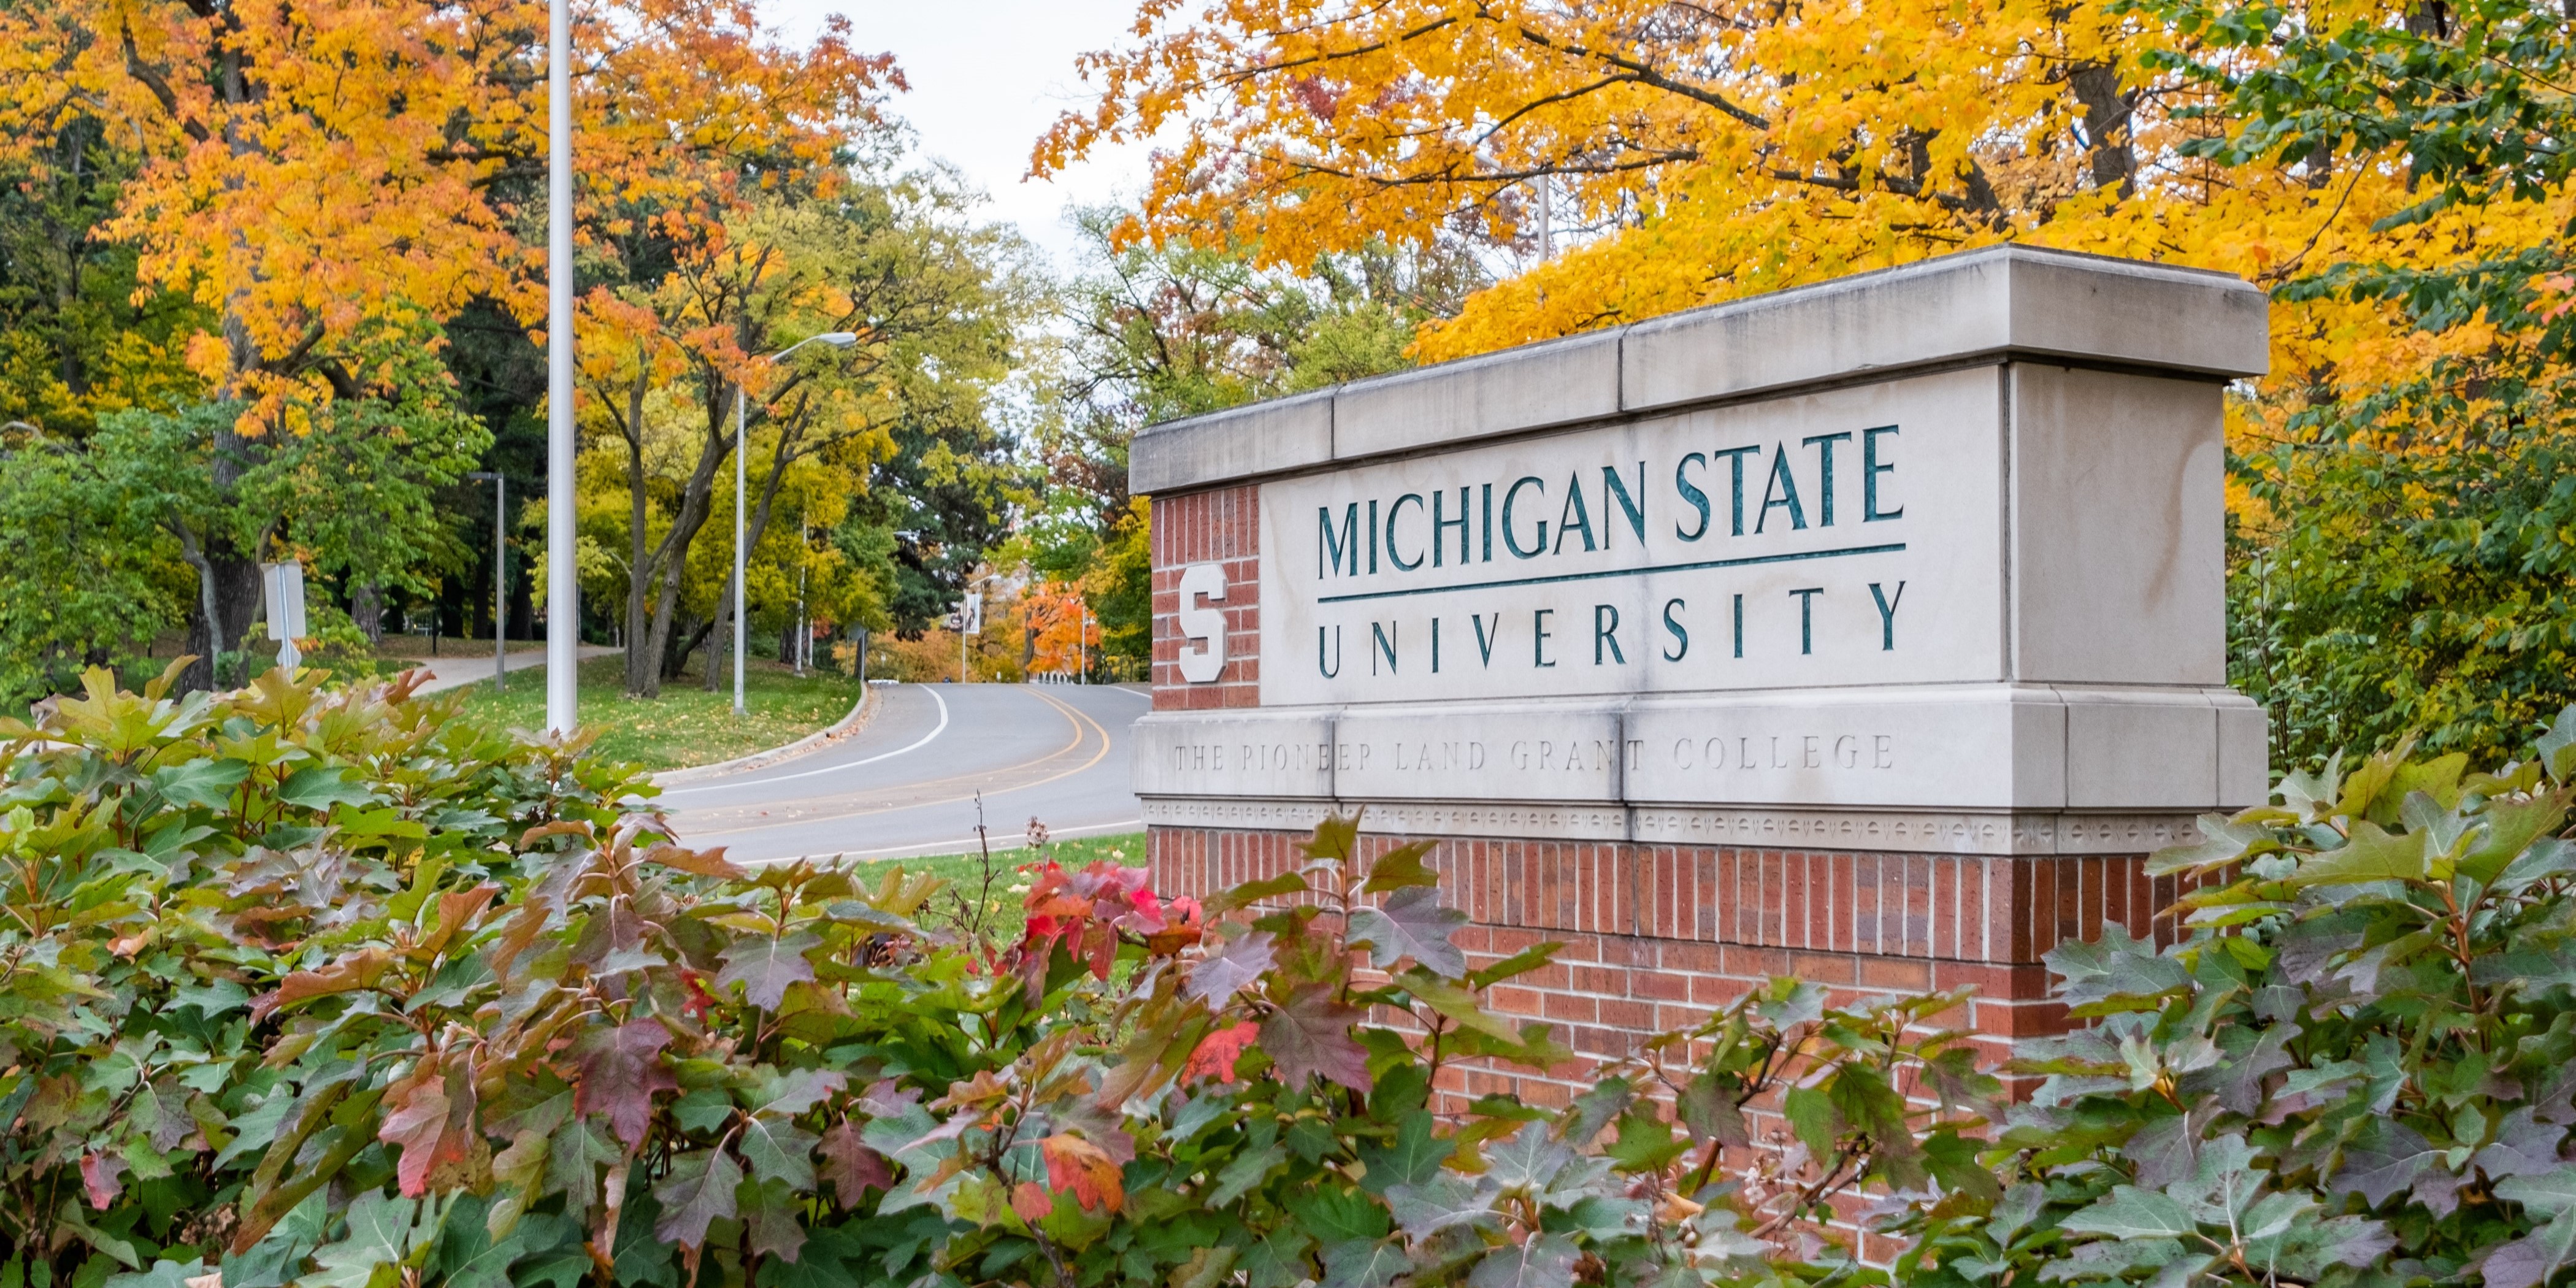 Michigan State University sign among fall foliage